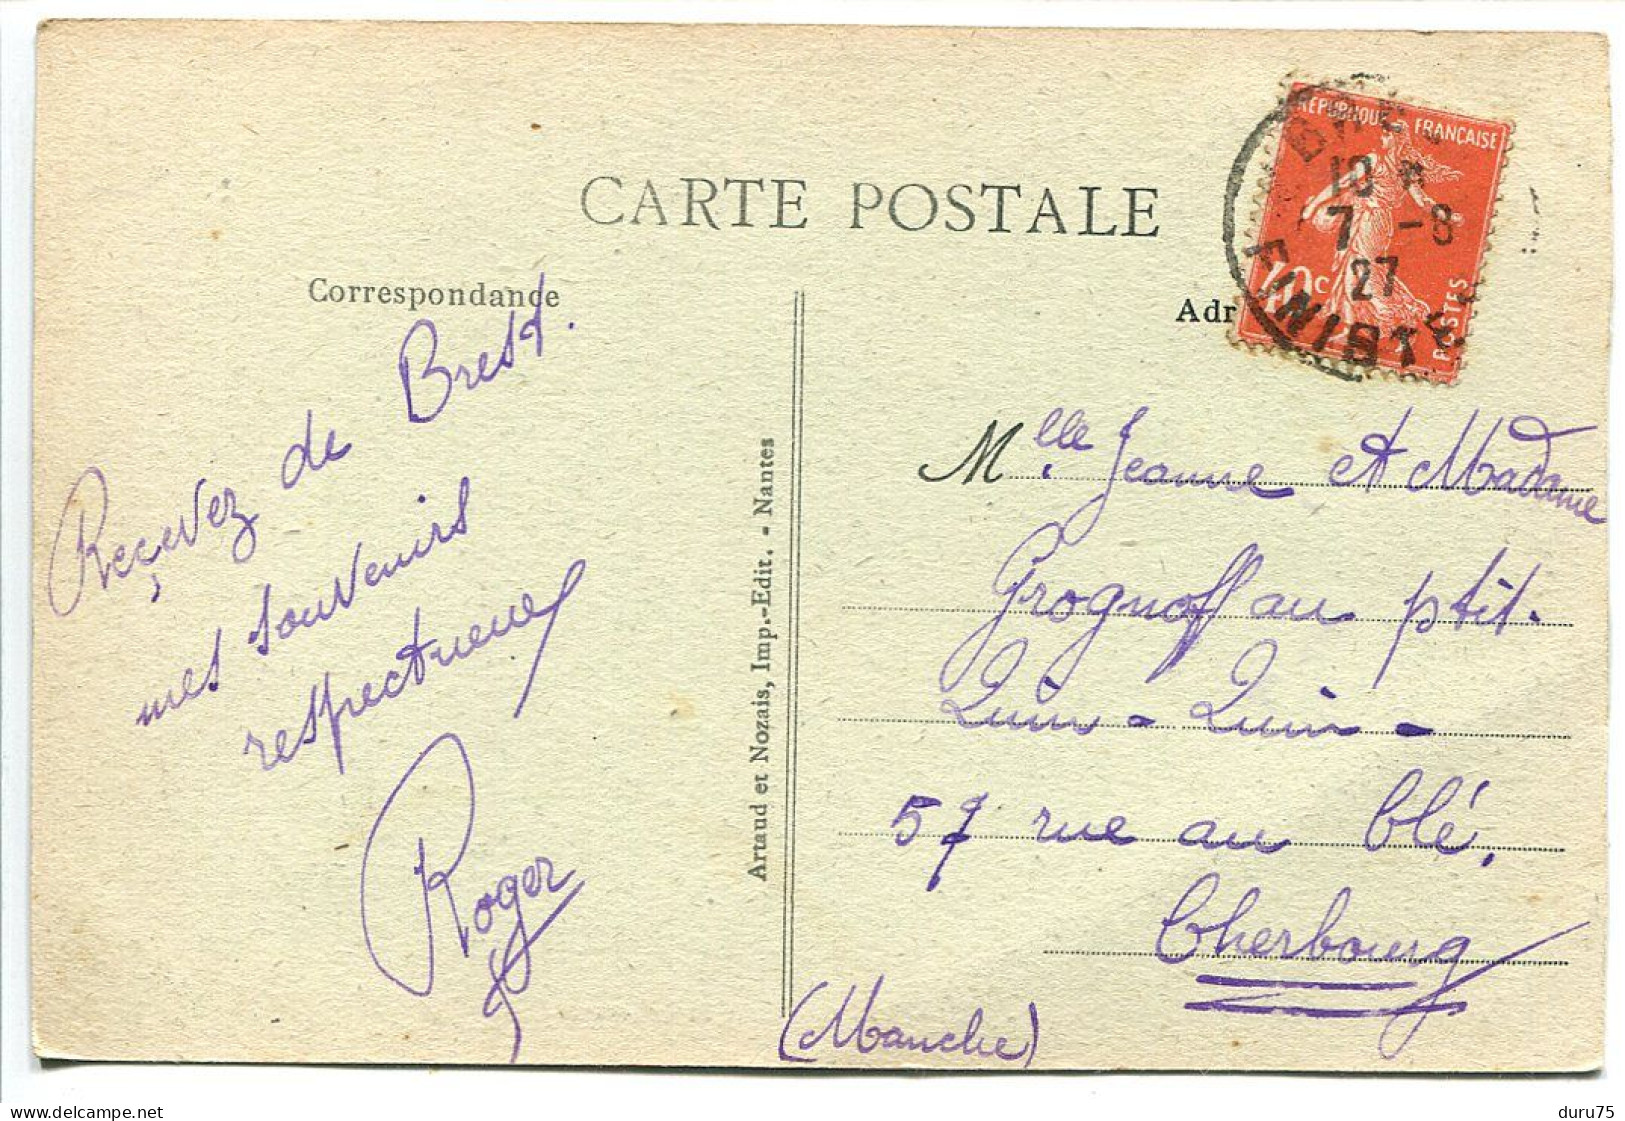 CPA Voyagé 1927 * BREST Jetée Et Phare Du Port De Commerce ( Bateaux Militaires En Mer ) Artaud Nozais Editieur - Brest